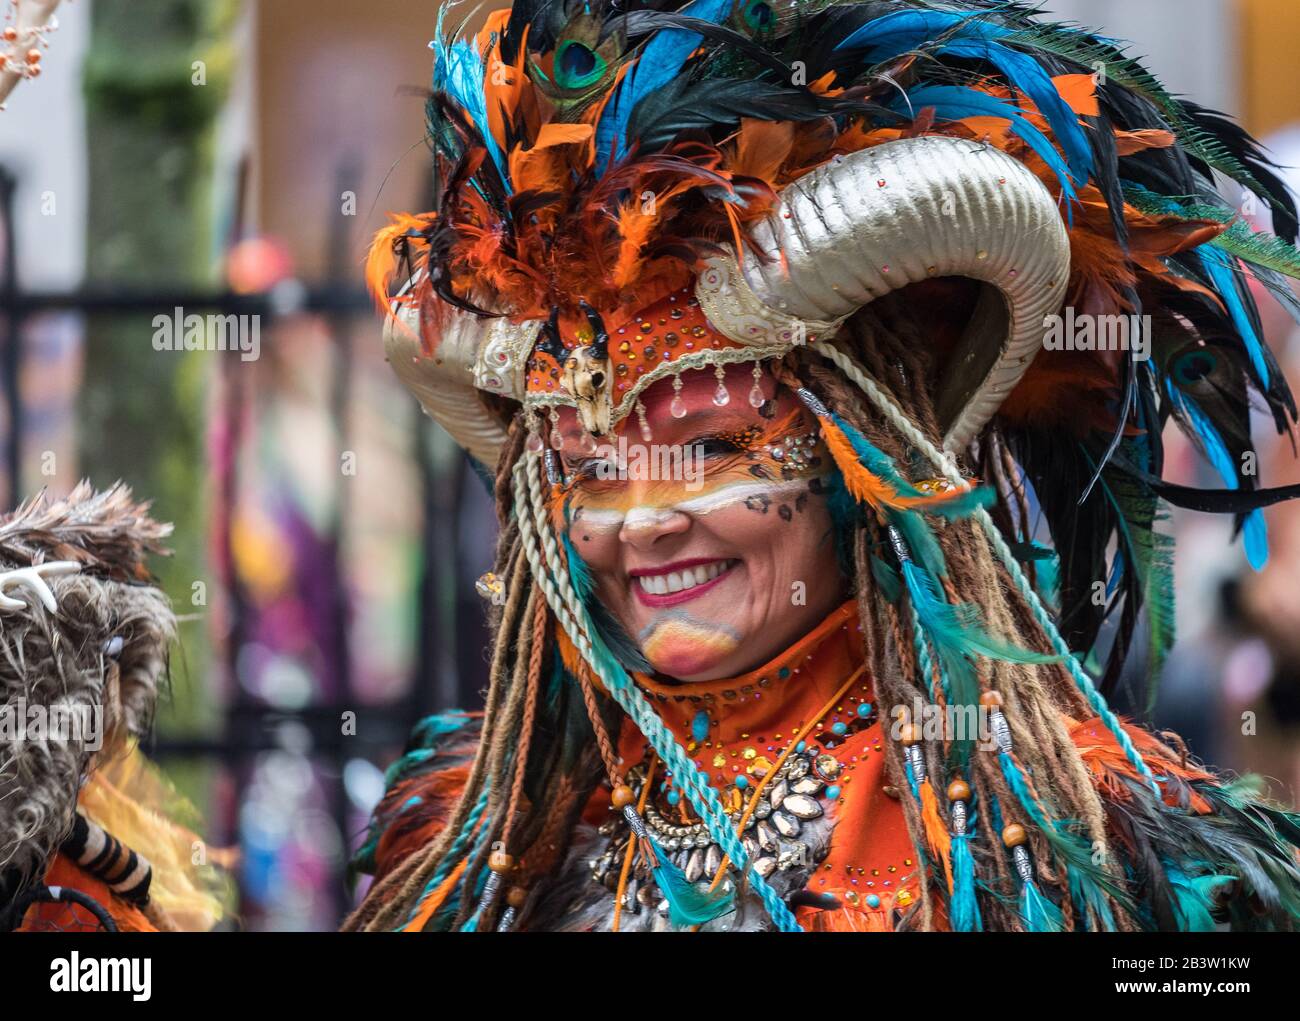 Carnaval dans la province de Limbourg, Pays-Bas Banque D'Images